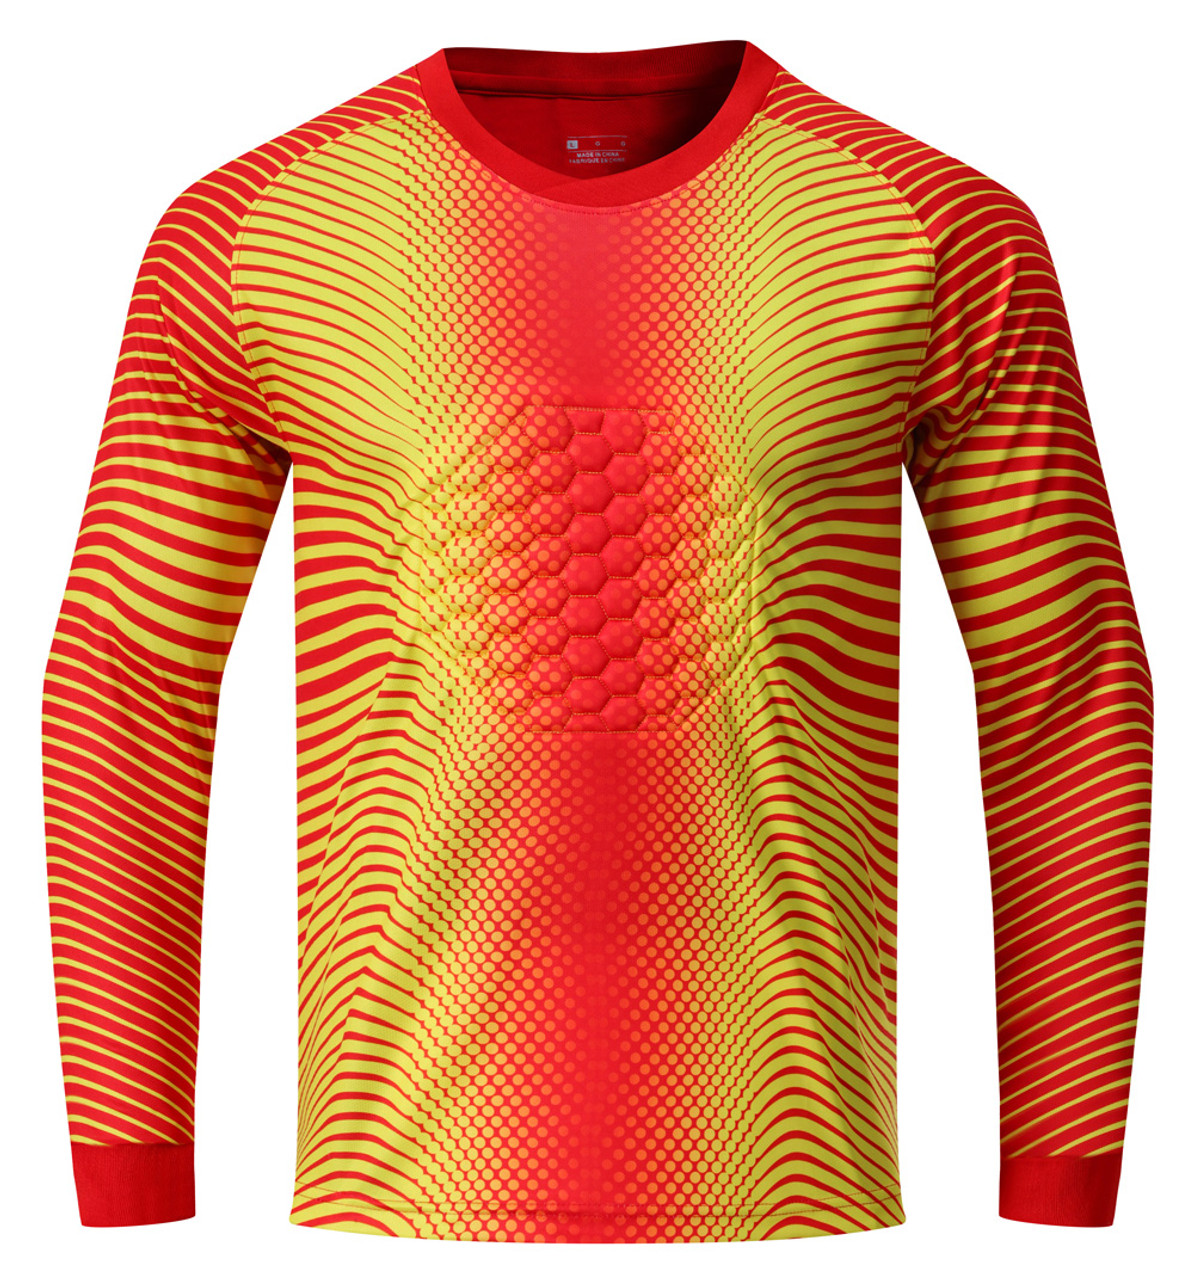 ORYG Goalkeeper Uniform Custom Goalie Jerseys with Name Number Team Logo  for Men Women Youth Kids Long Sleeve Goalkeeper Kit